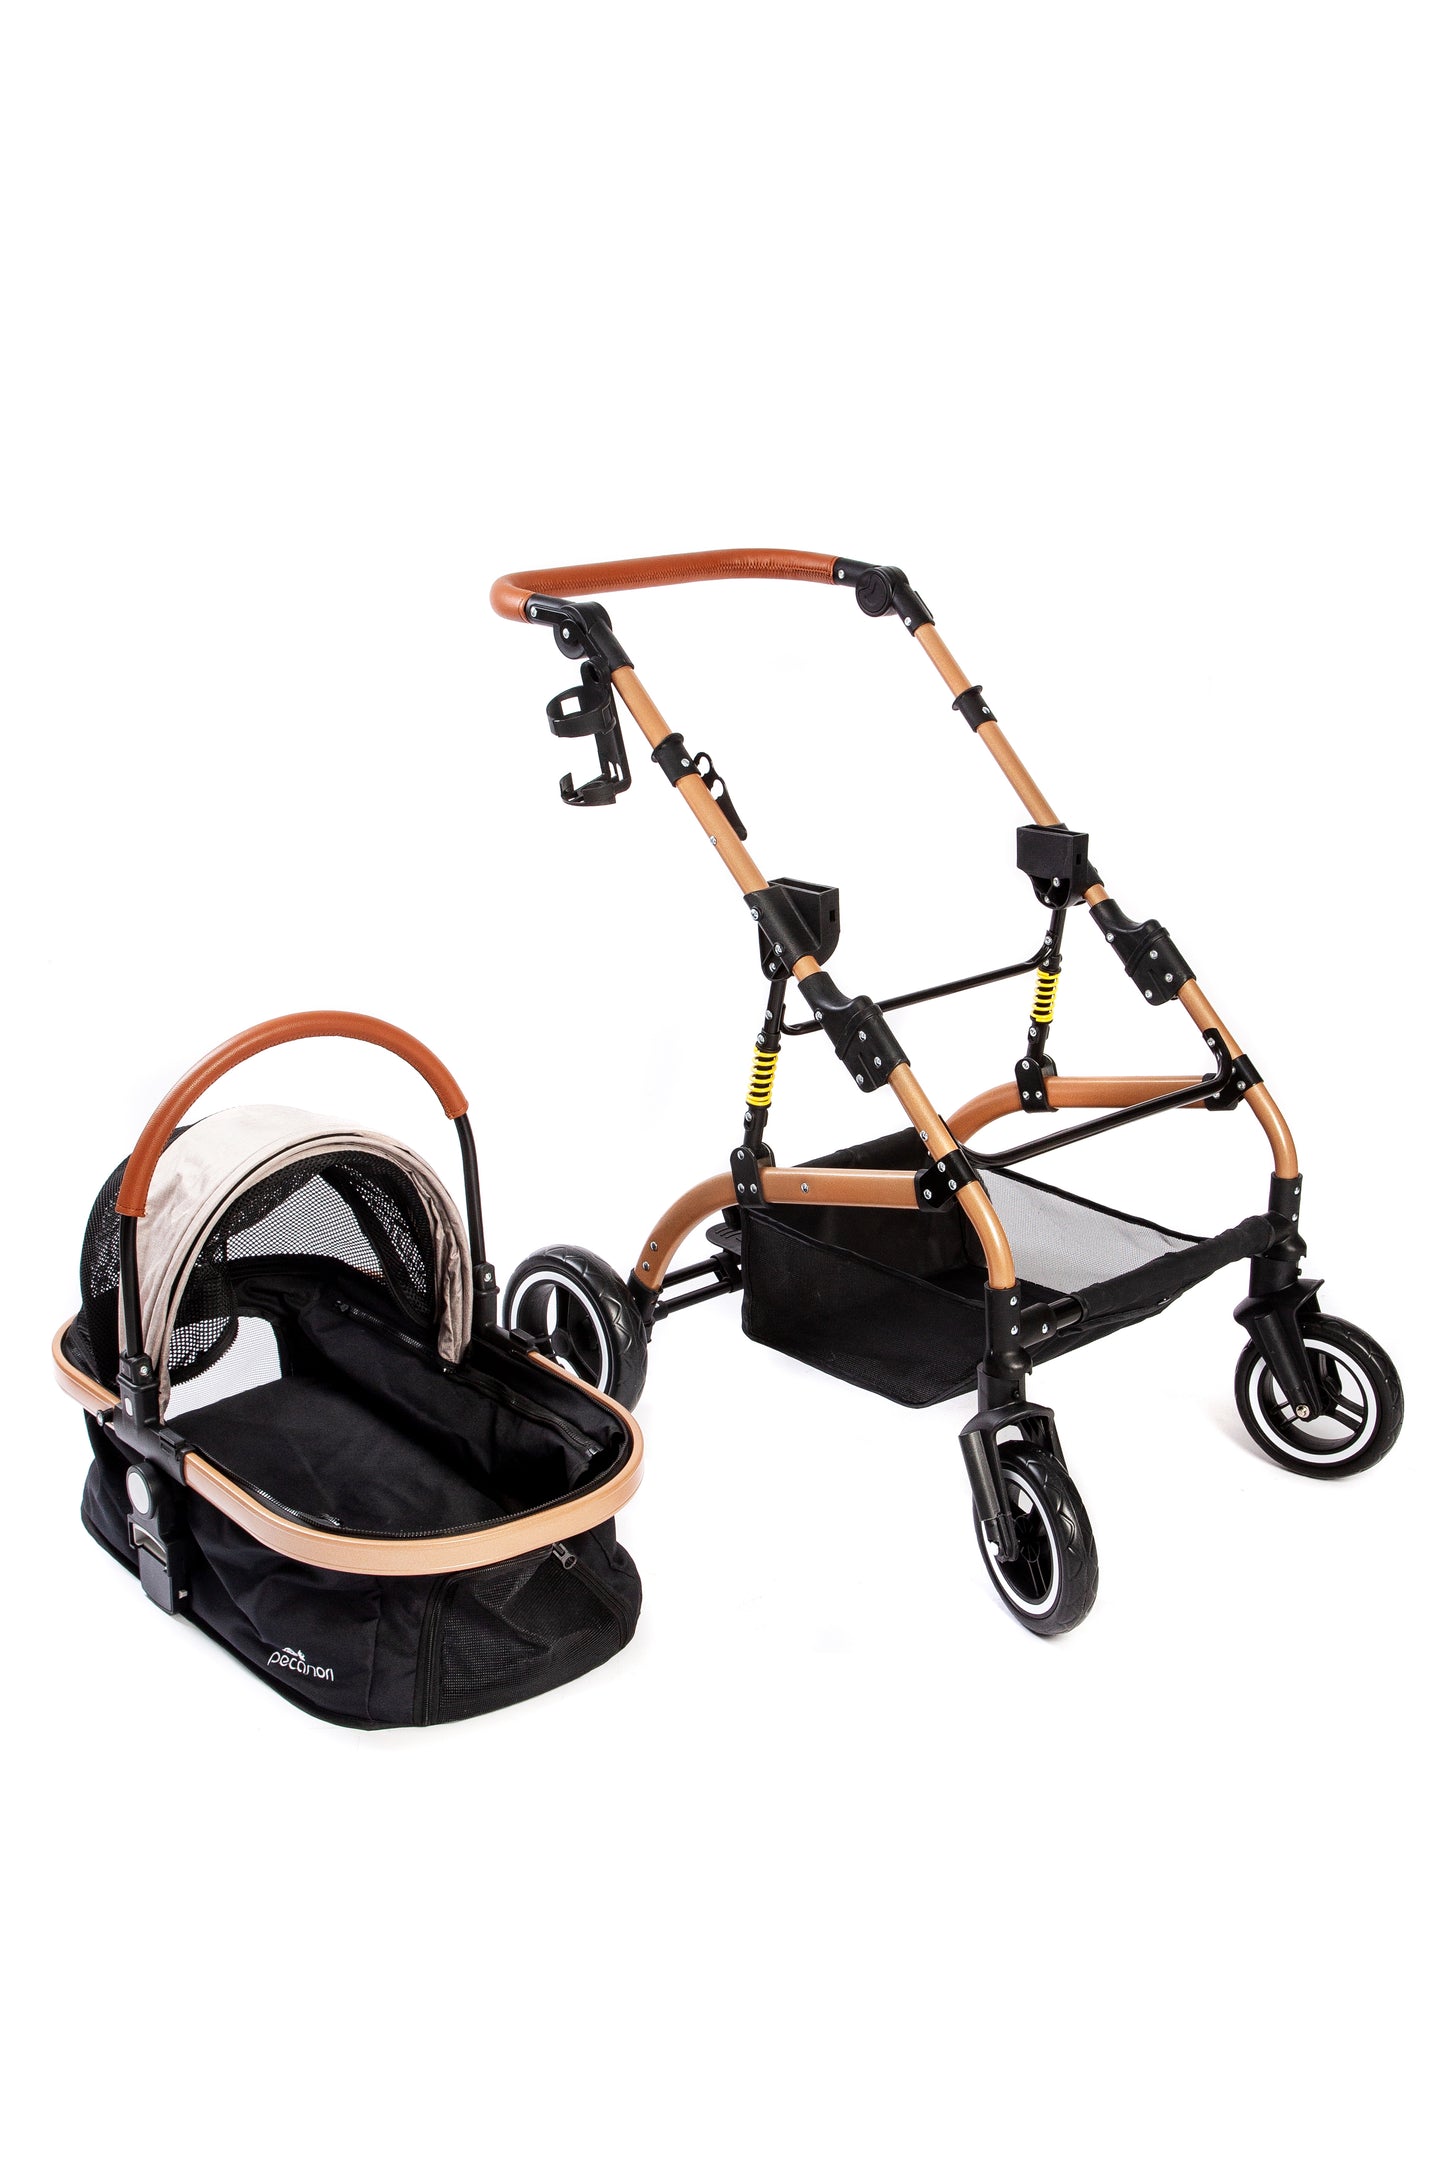 Picanori Premium Stroller Winnie -PECA1045-